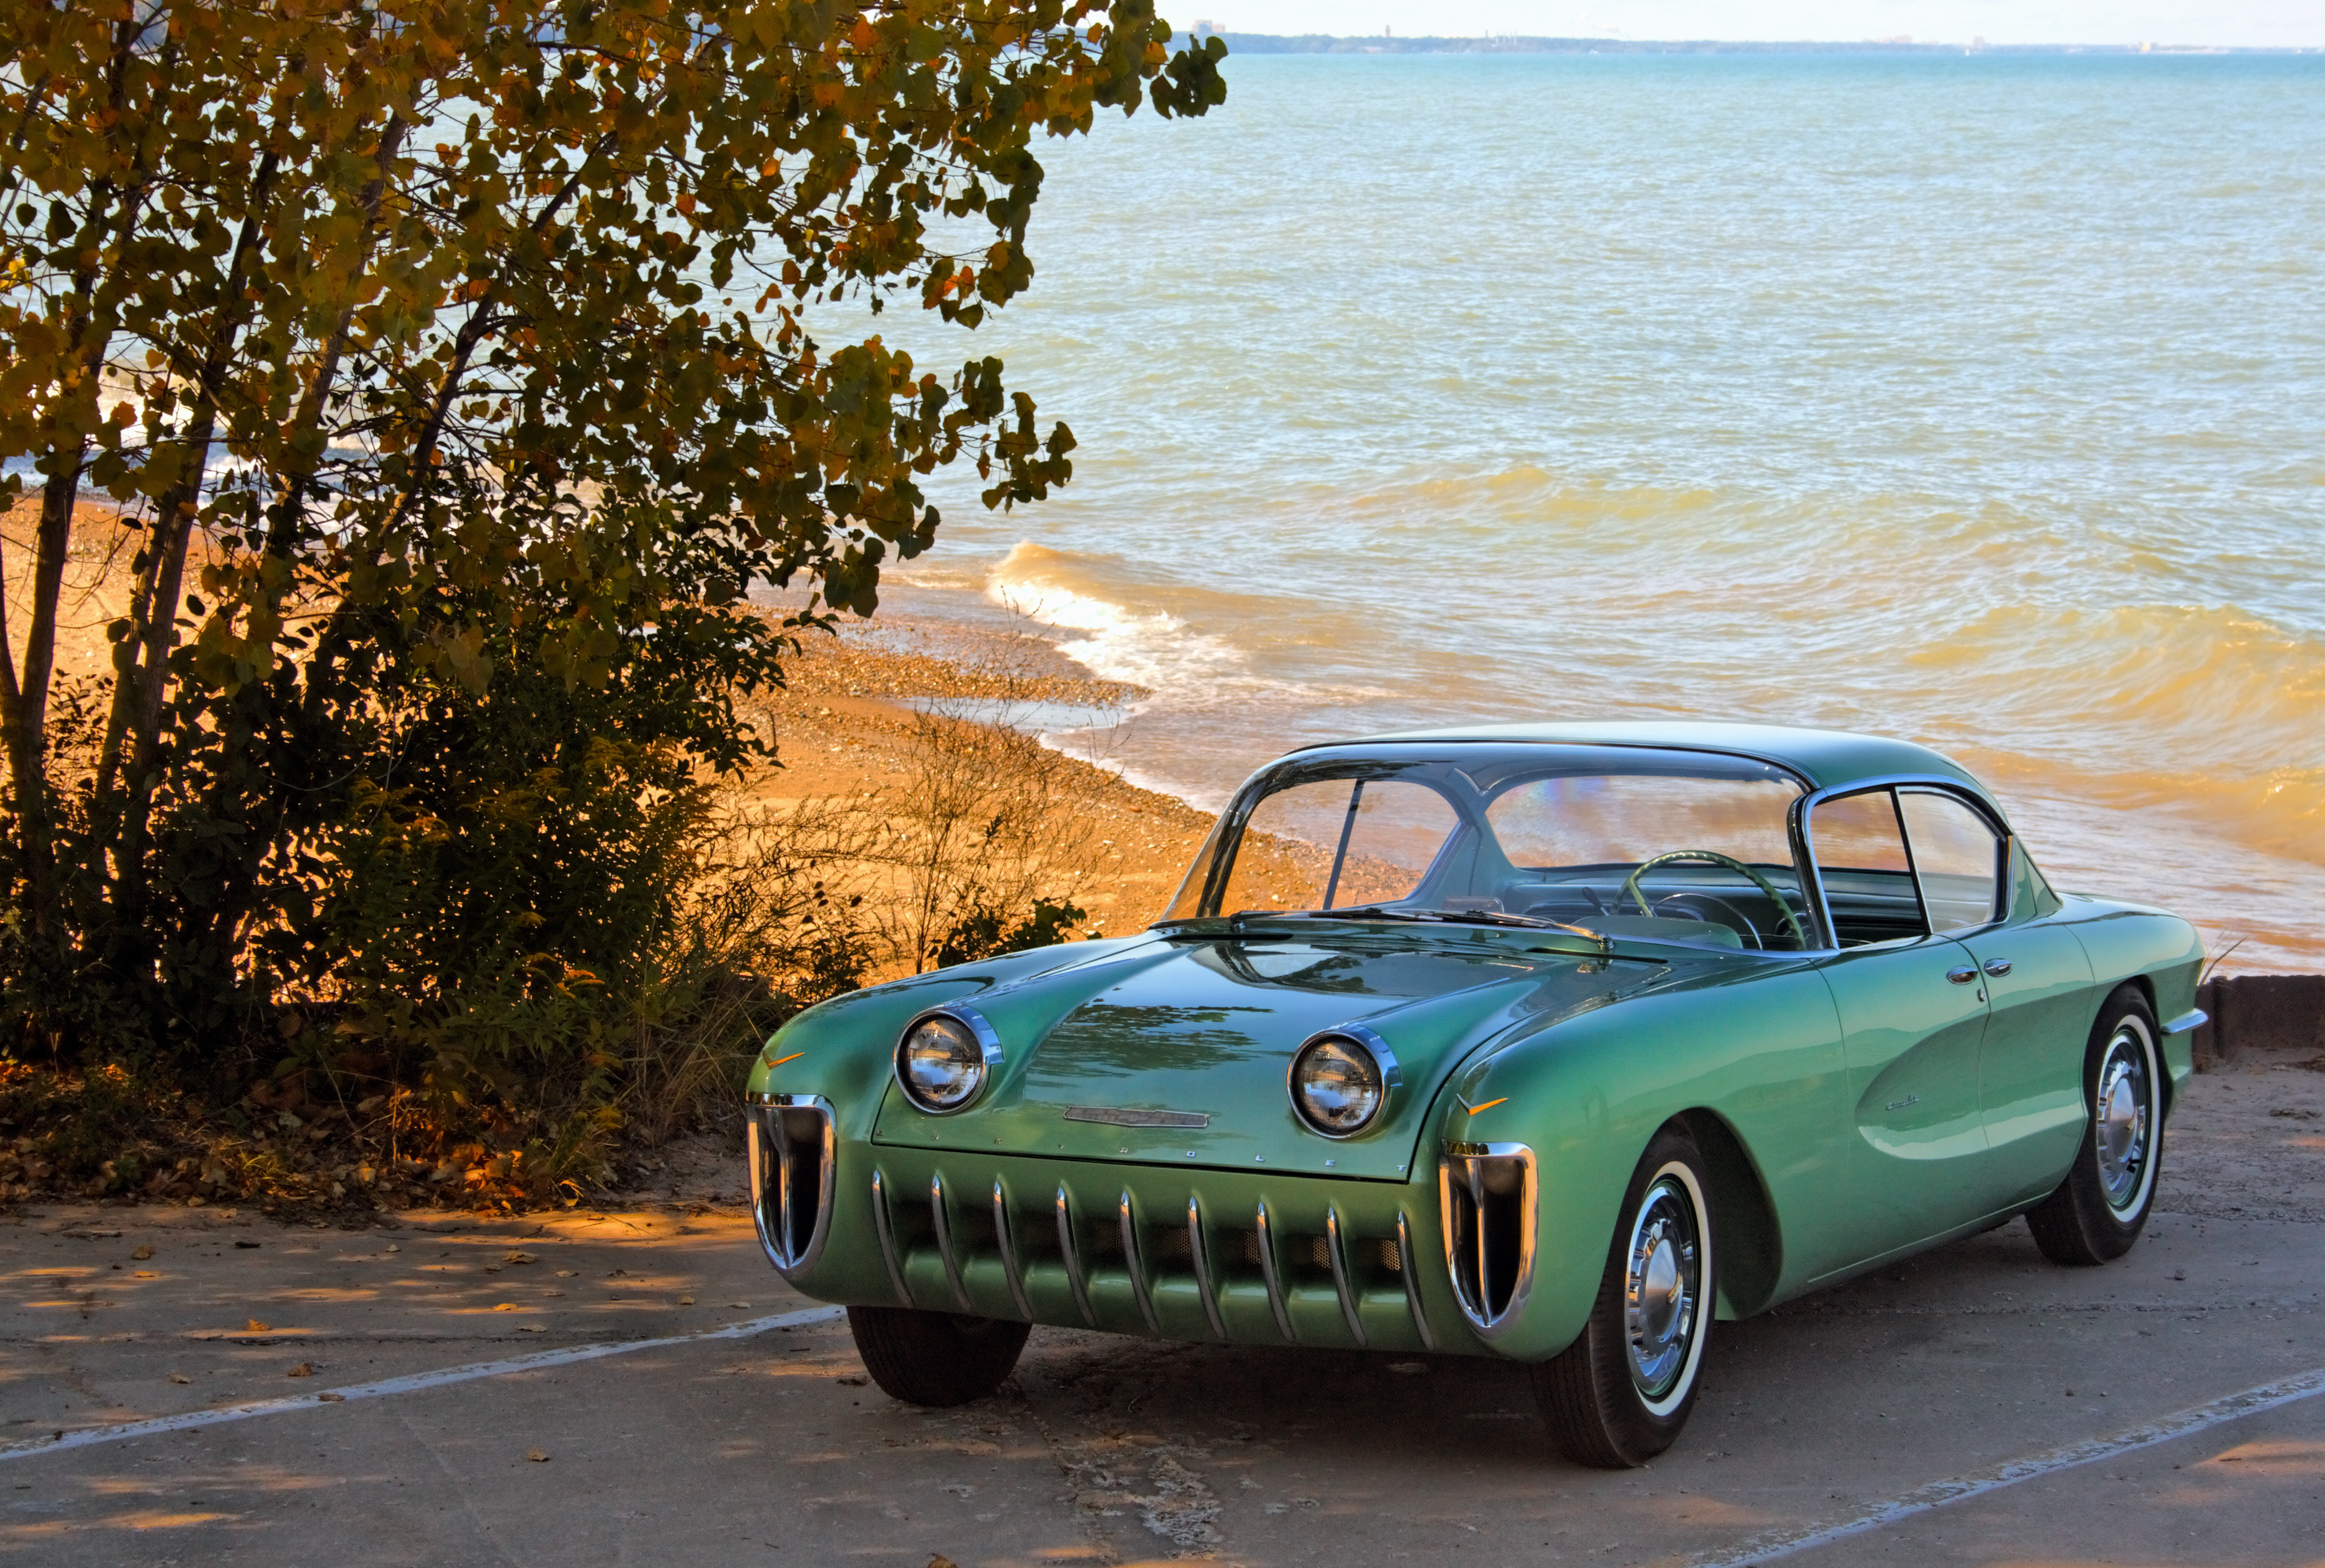 1955 Chevrolet Biscayne Motorama Show Car